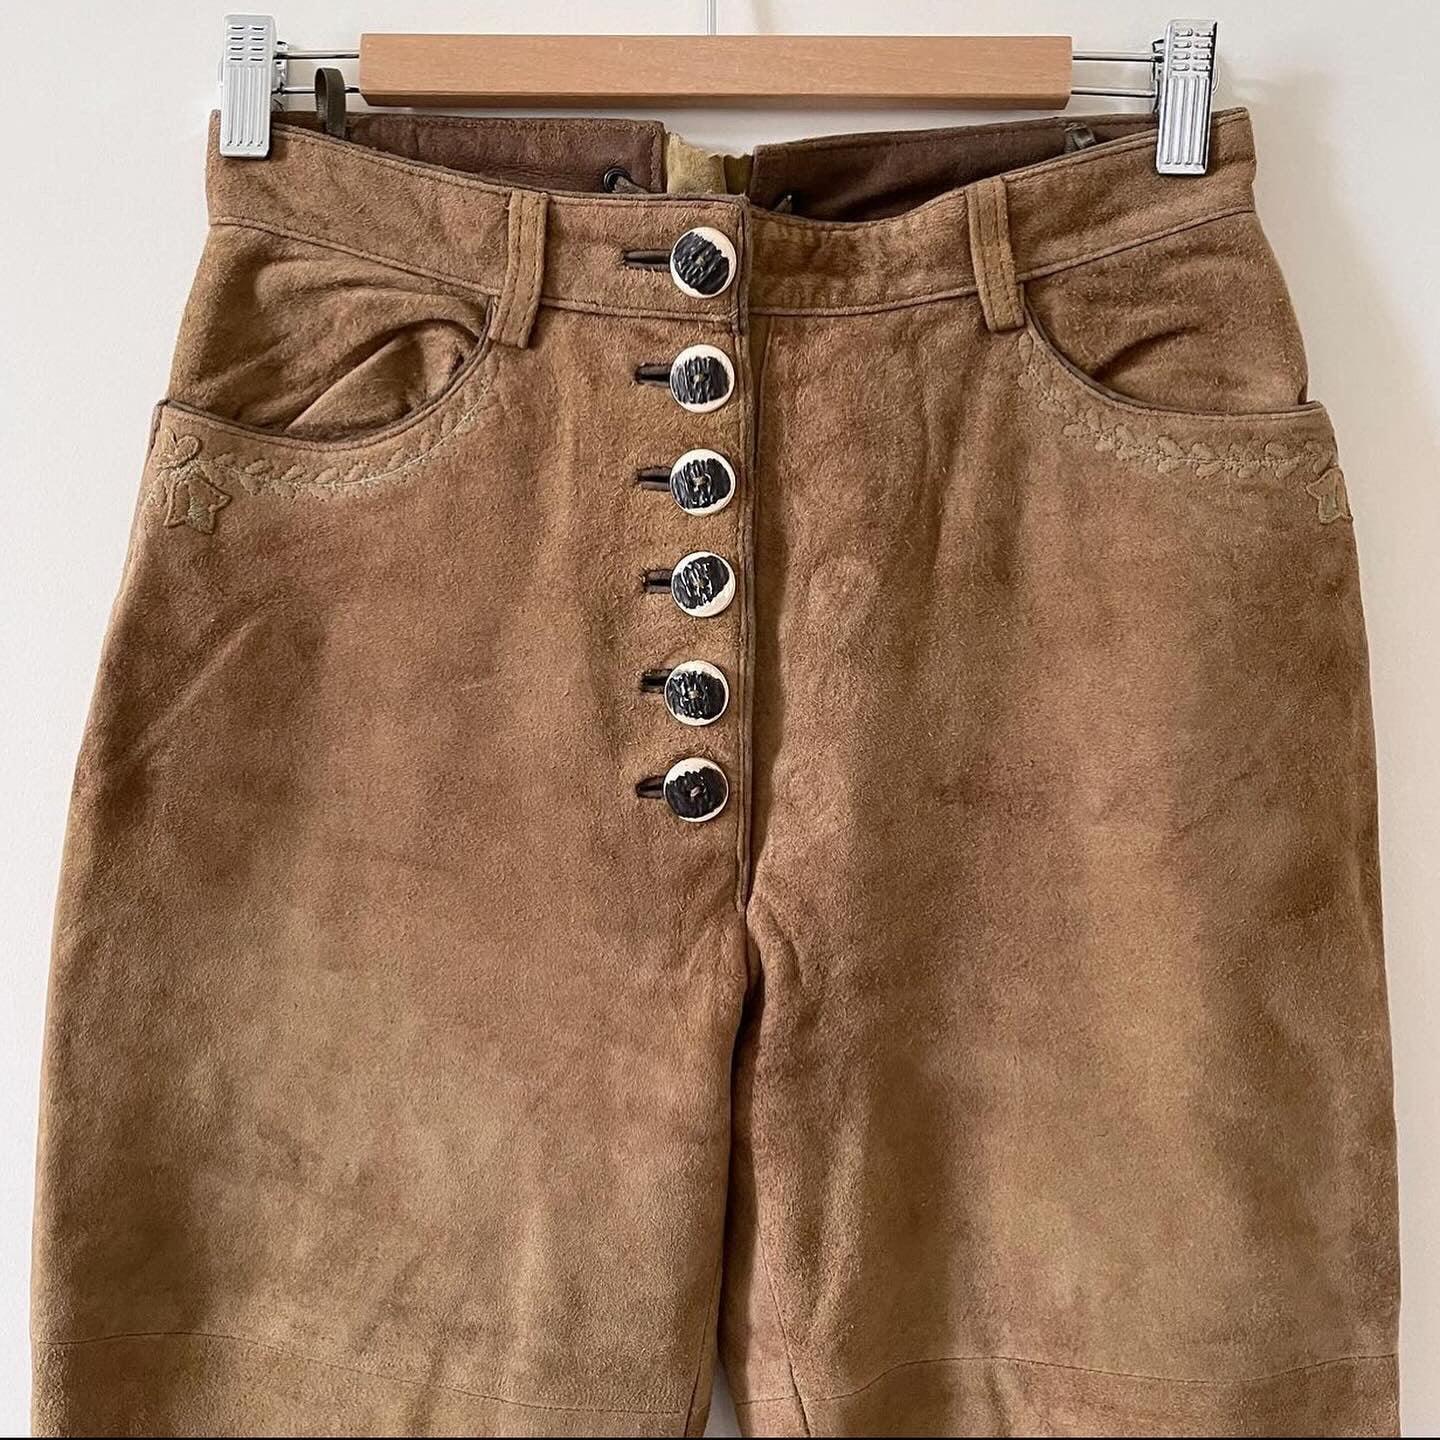 VINTAGE - TRADITIONAL AUSTRIAN Vintage Leather Pants - AVVIIVVA.COM